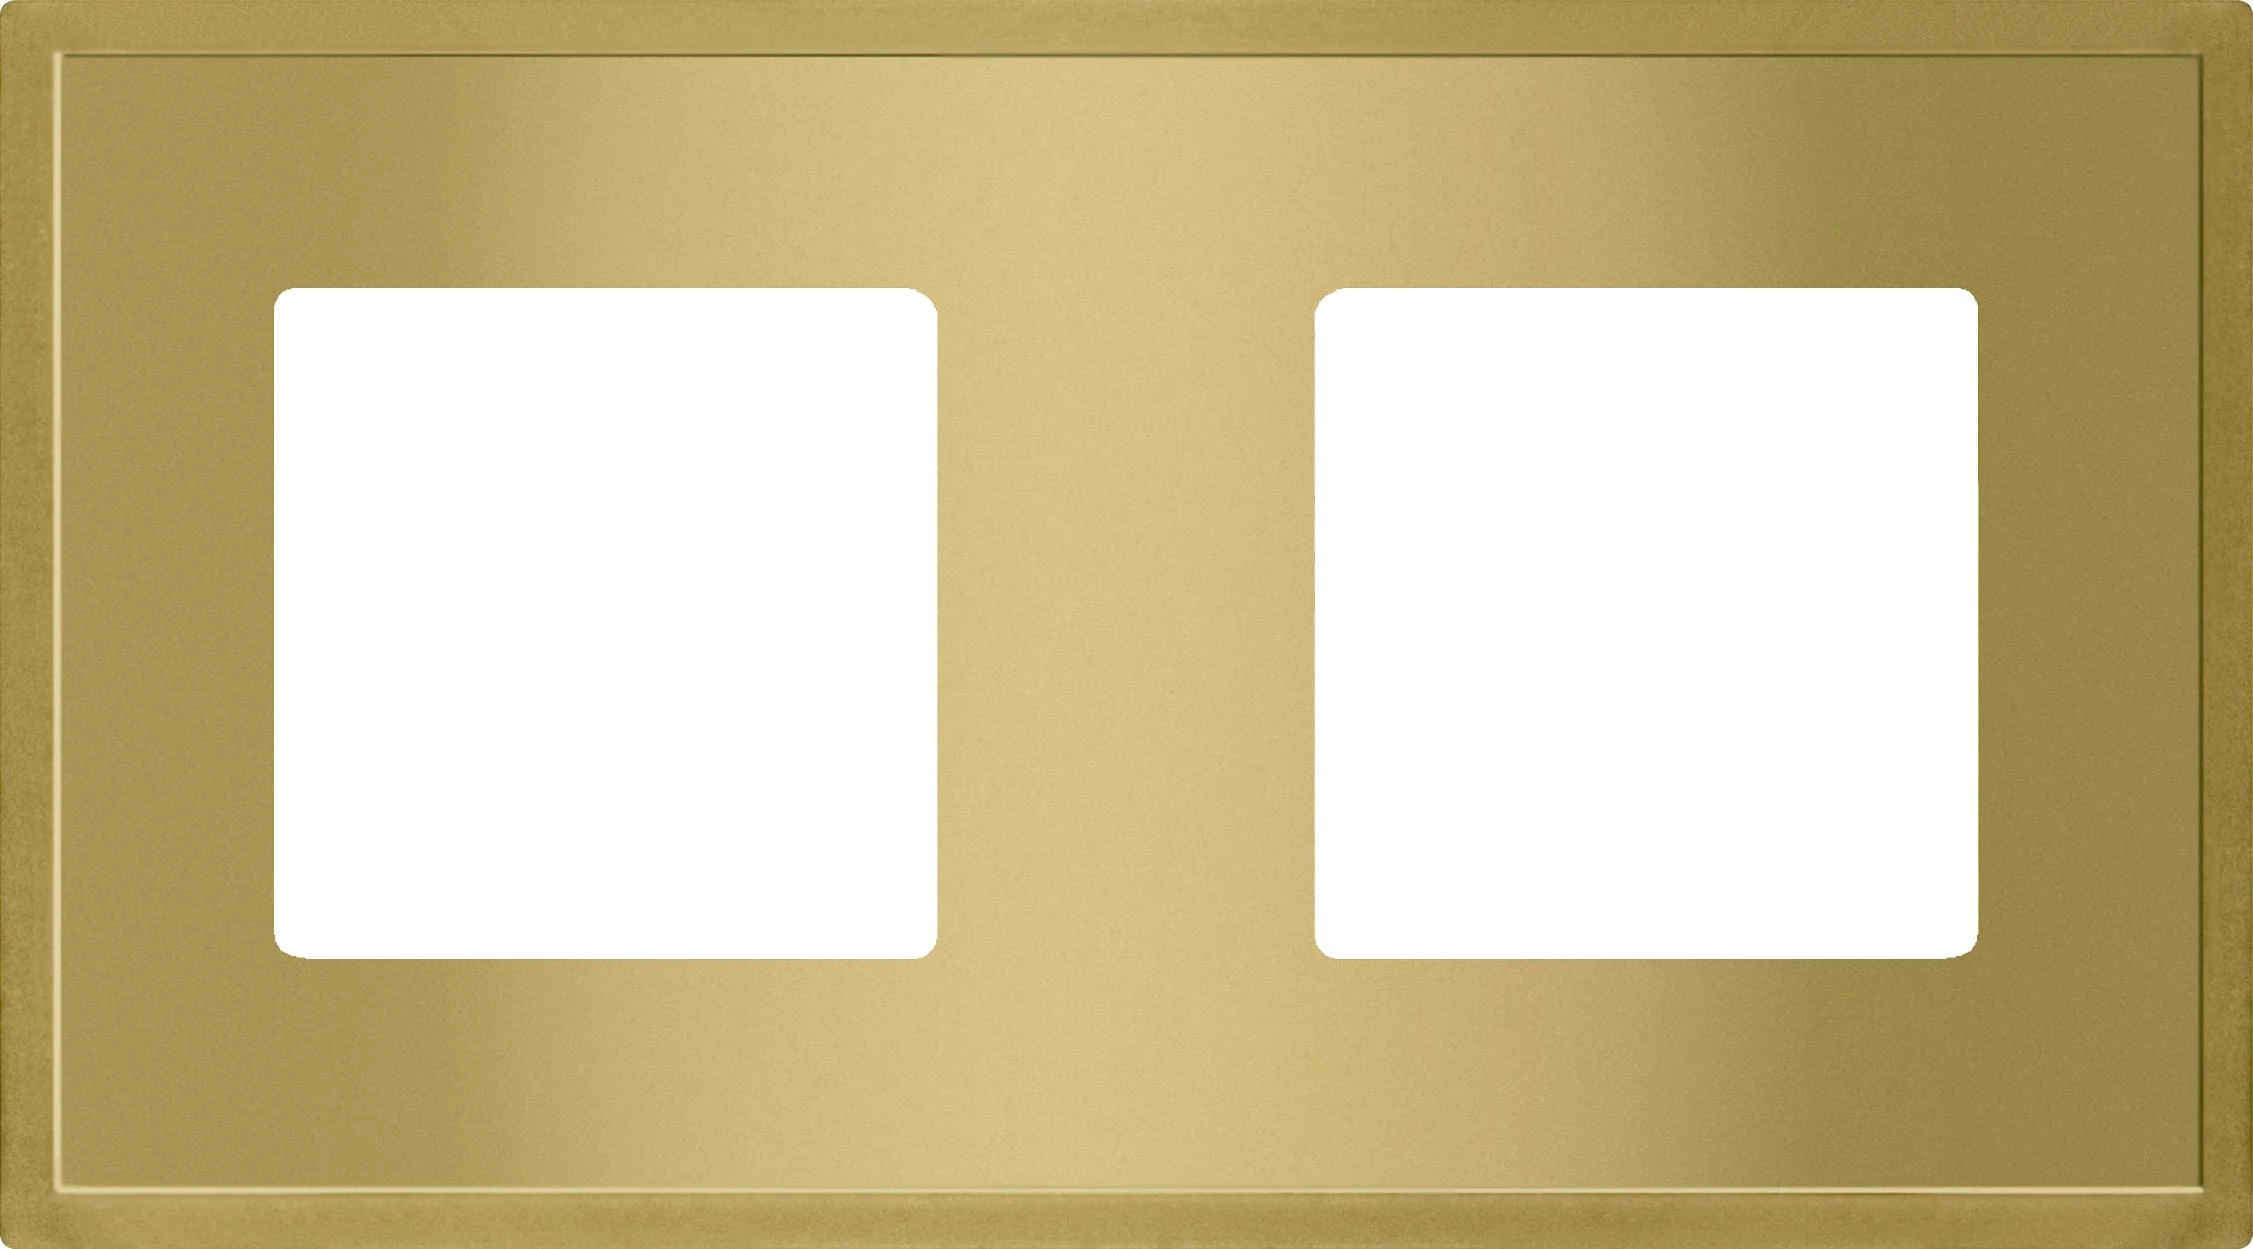  артикул FD01242OB название Рамка 2-ая (двойная), цвет Светлое золото, Madrid, Fede